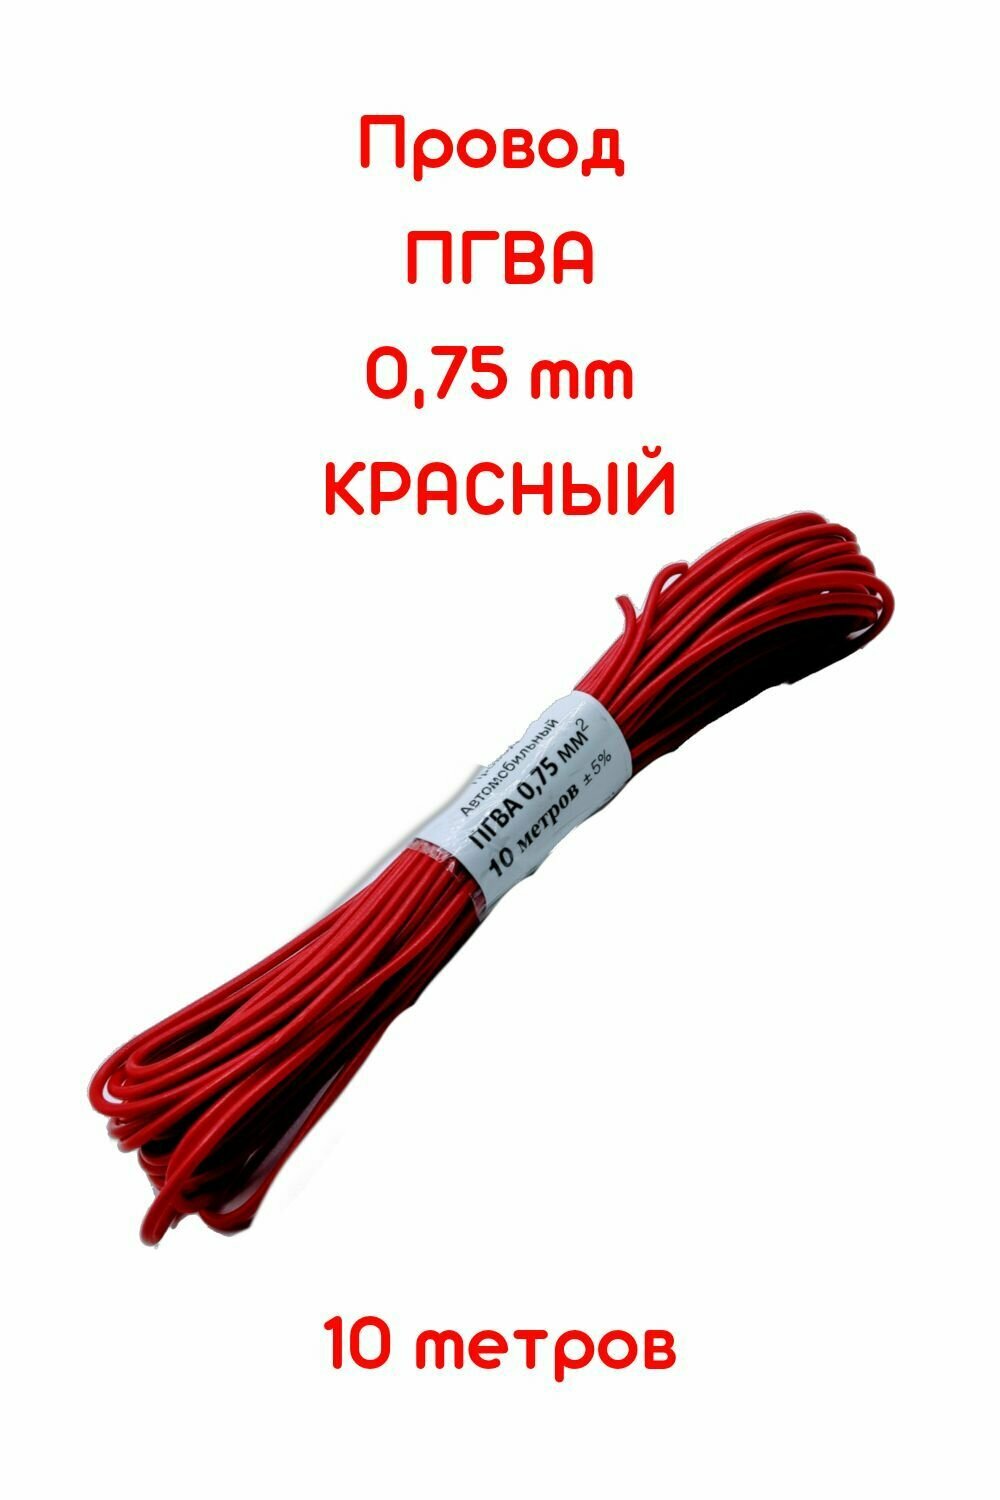 Провод автомобильной/для автомобильной проводки ПГВА 0,75 красный - 10 м. - фотография № 1